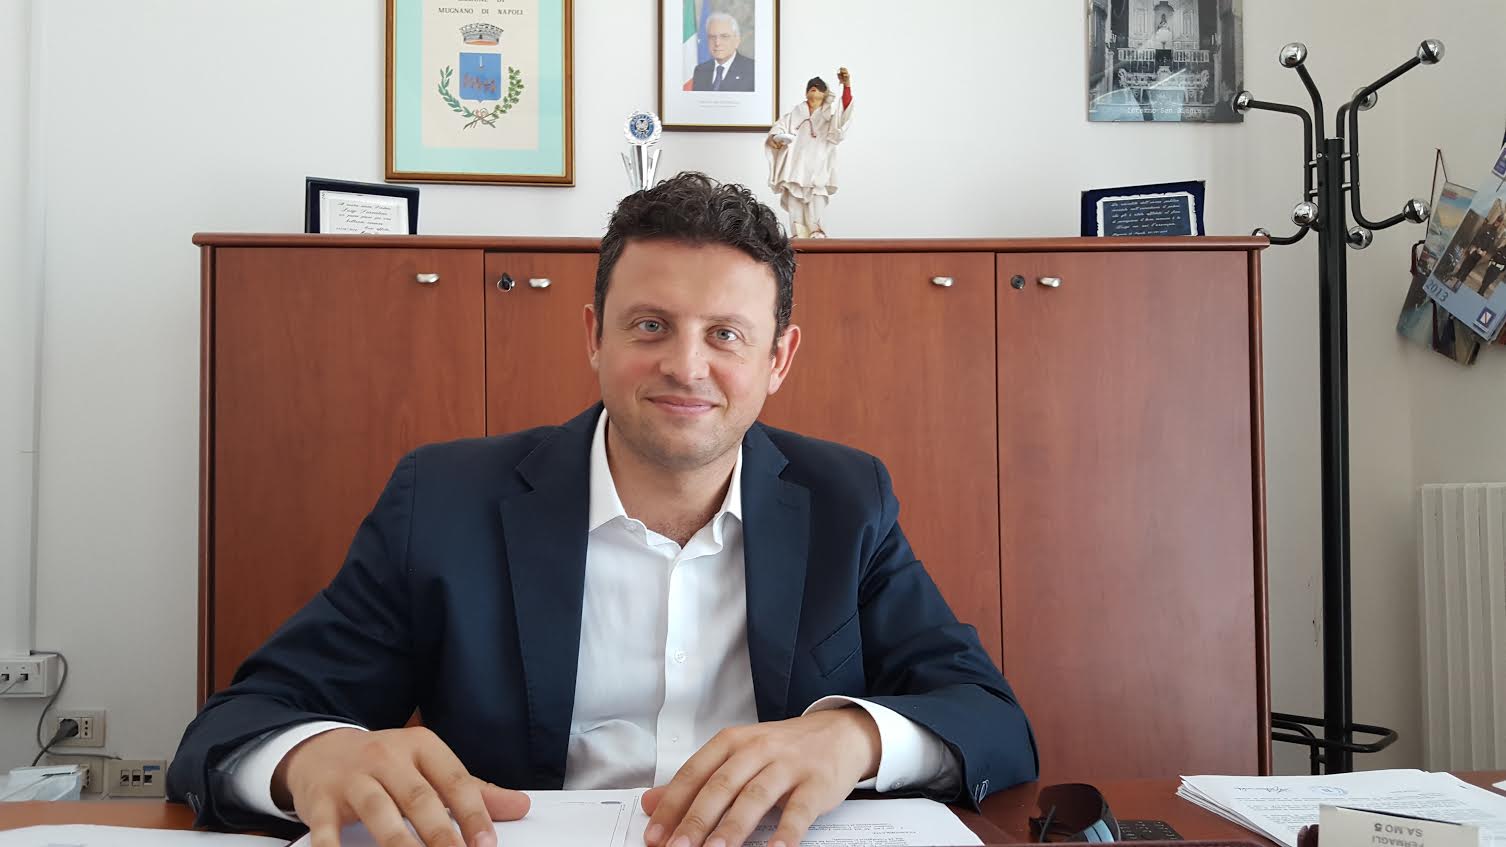 Mugnano, inquinamento acustico, il sindaco Luigi Sarnataro emana l’ordinanza contro i rumori molesti